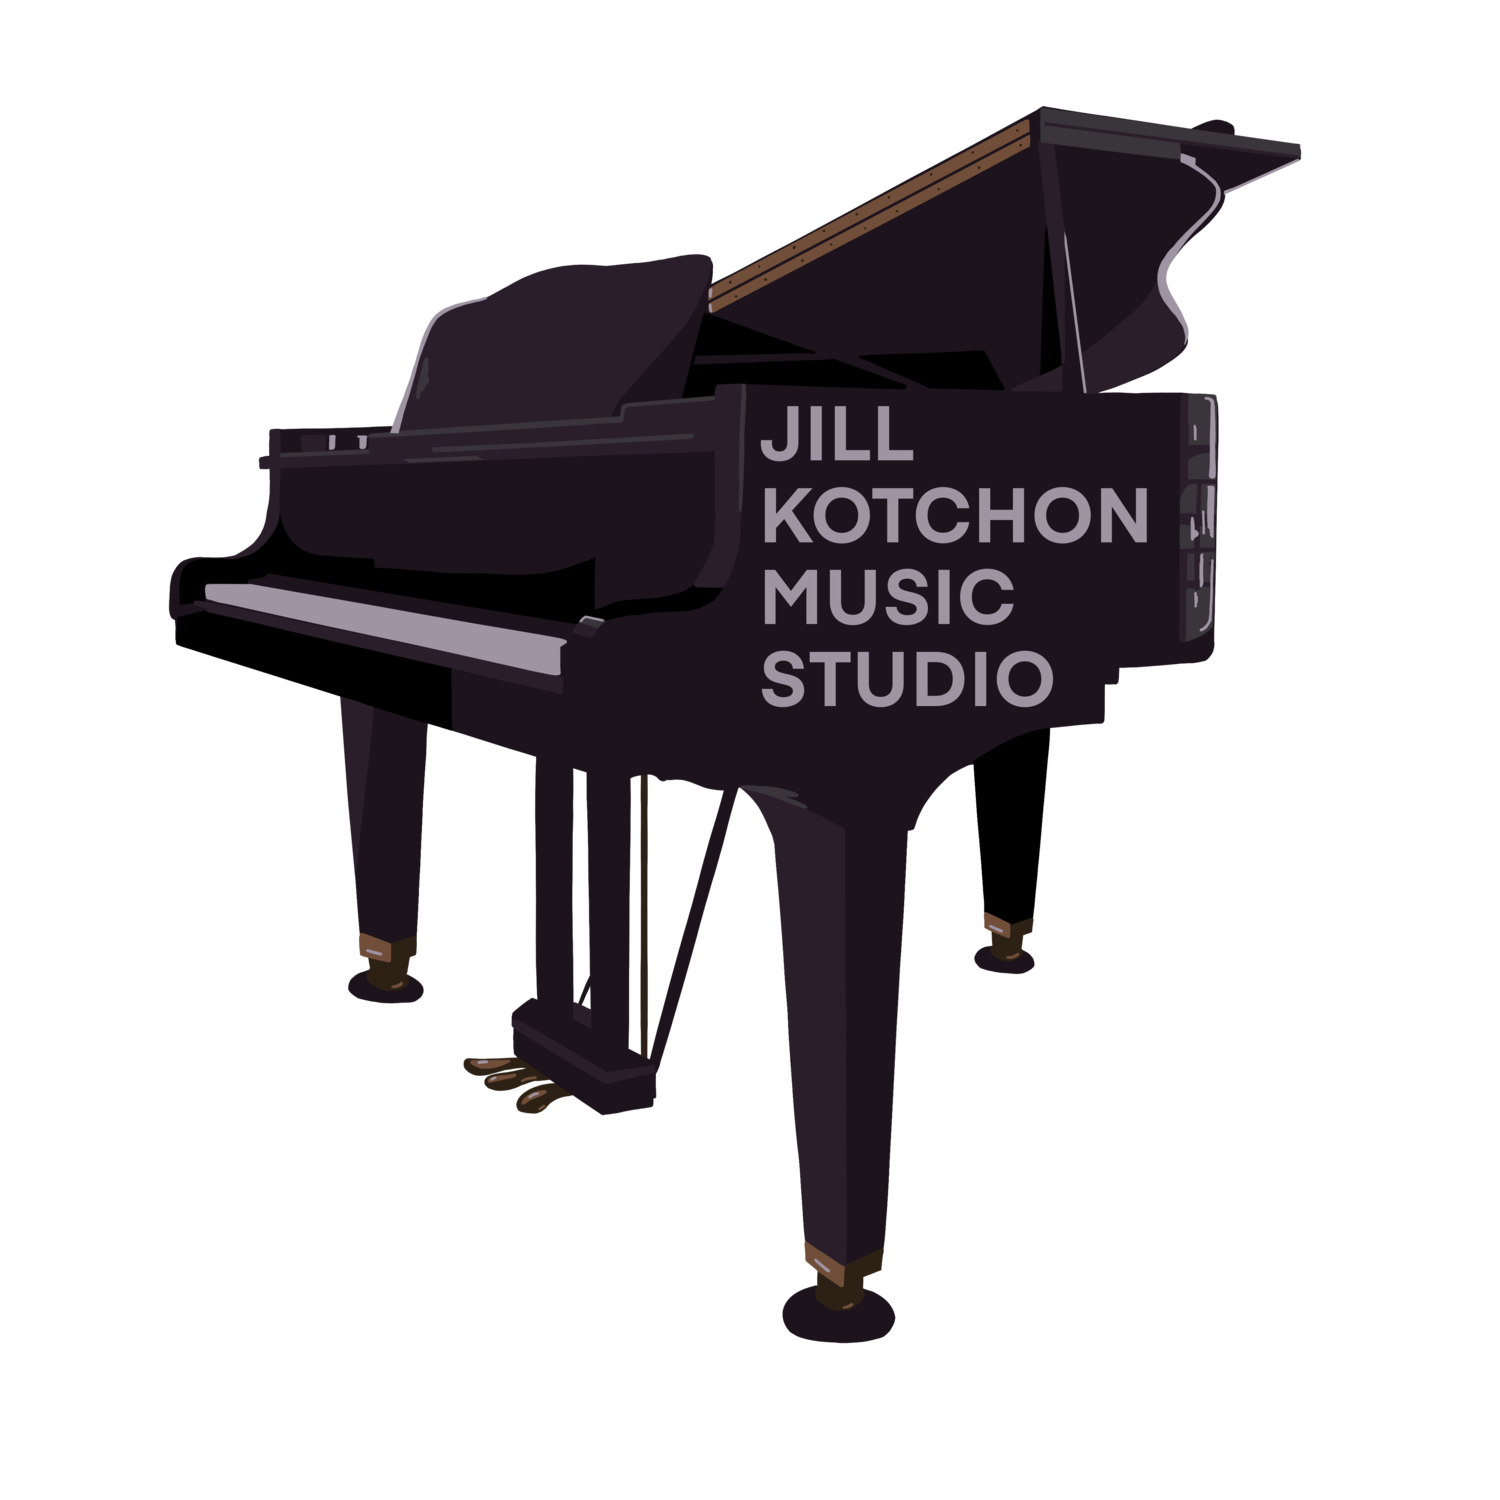 Jill Kotchon Music Studio